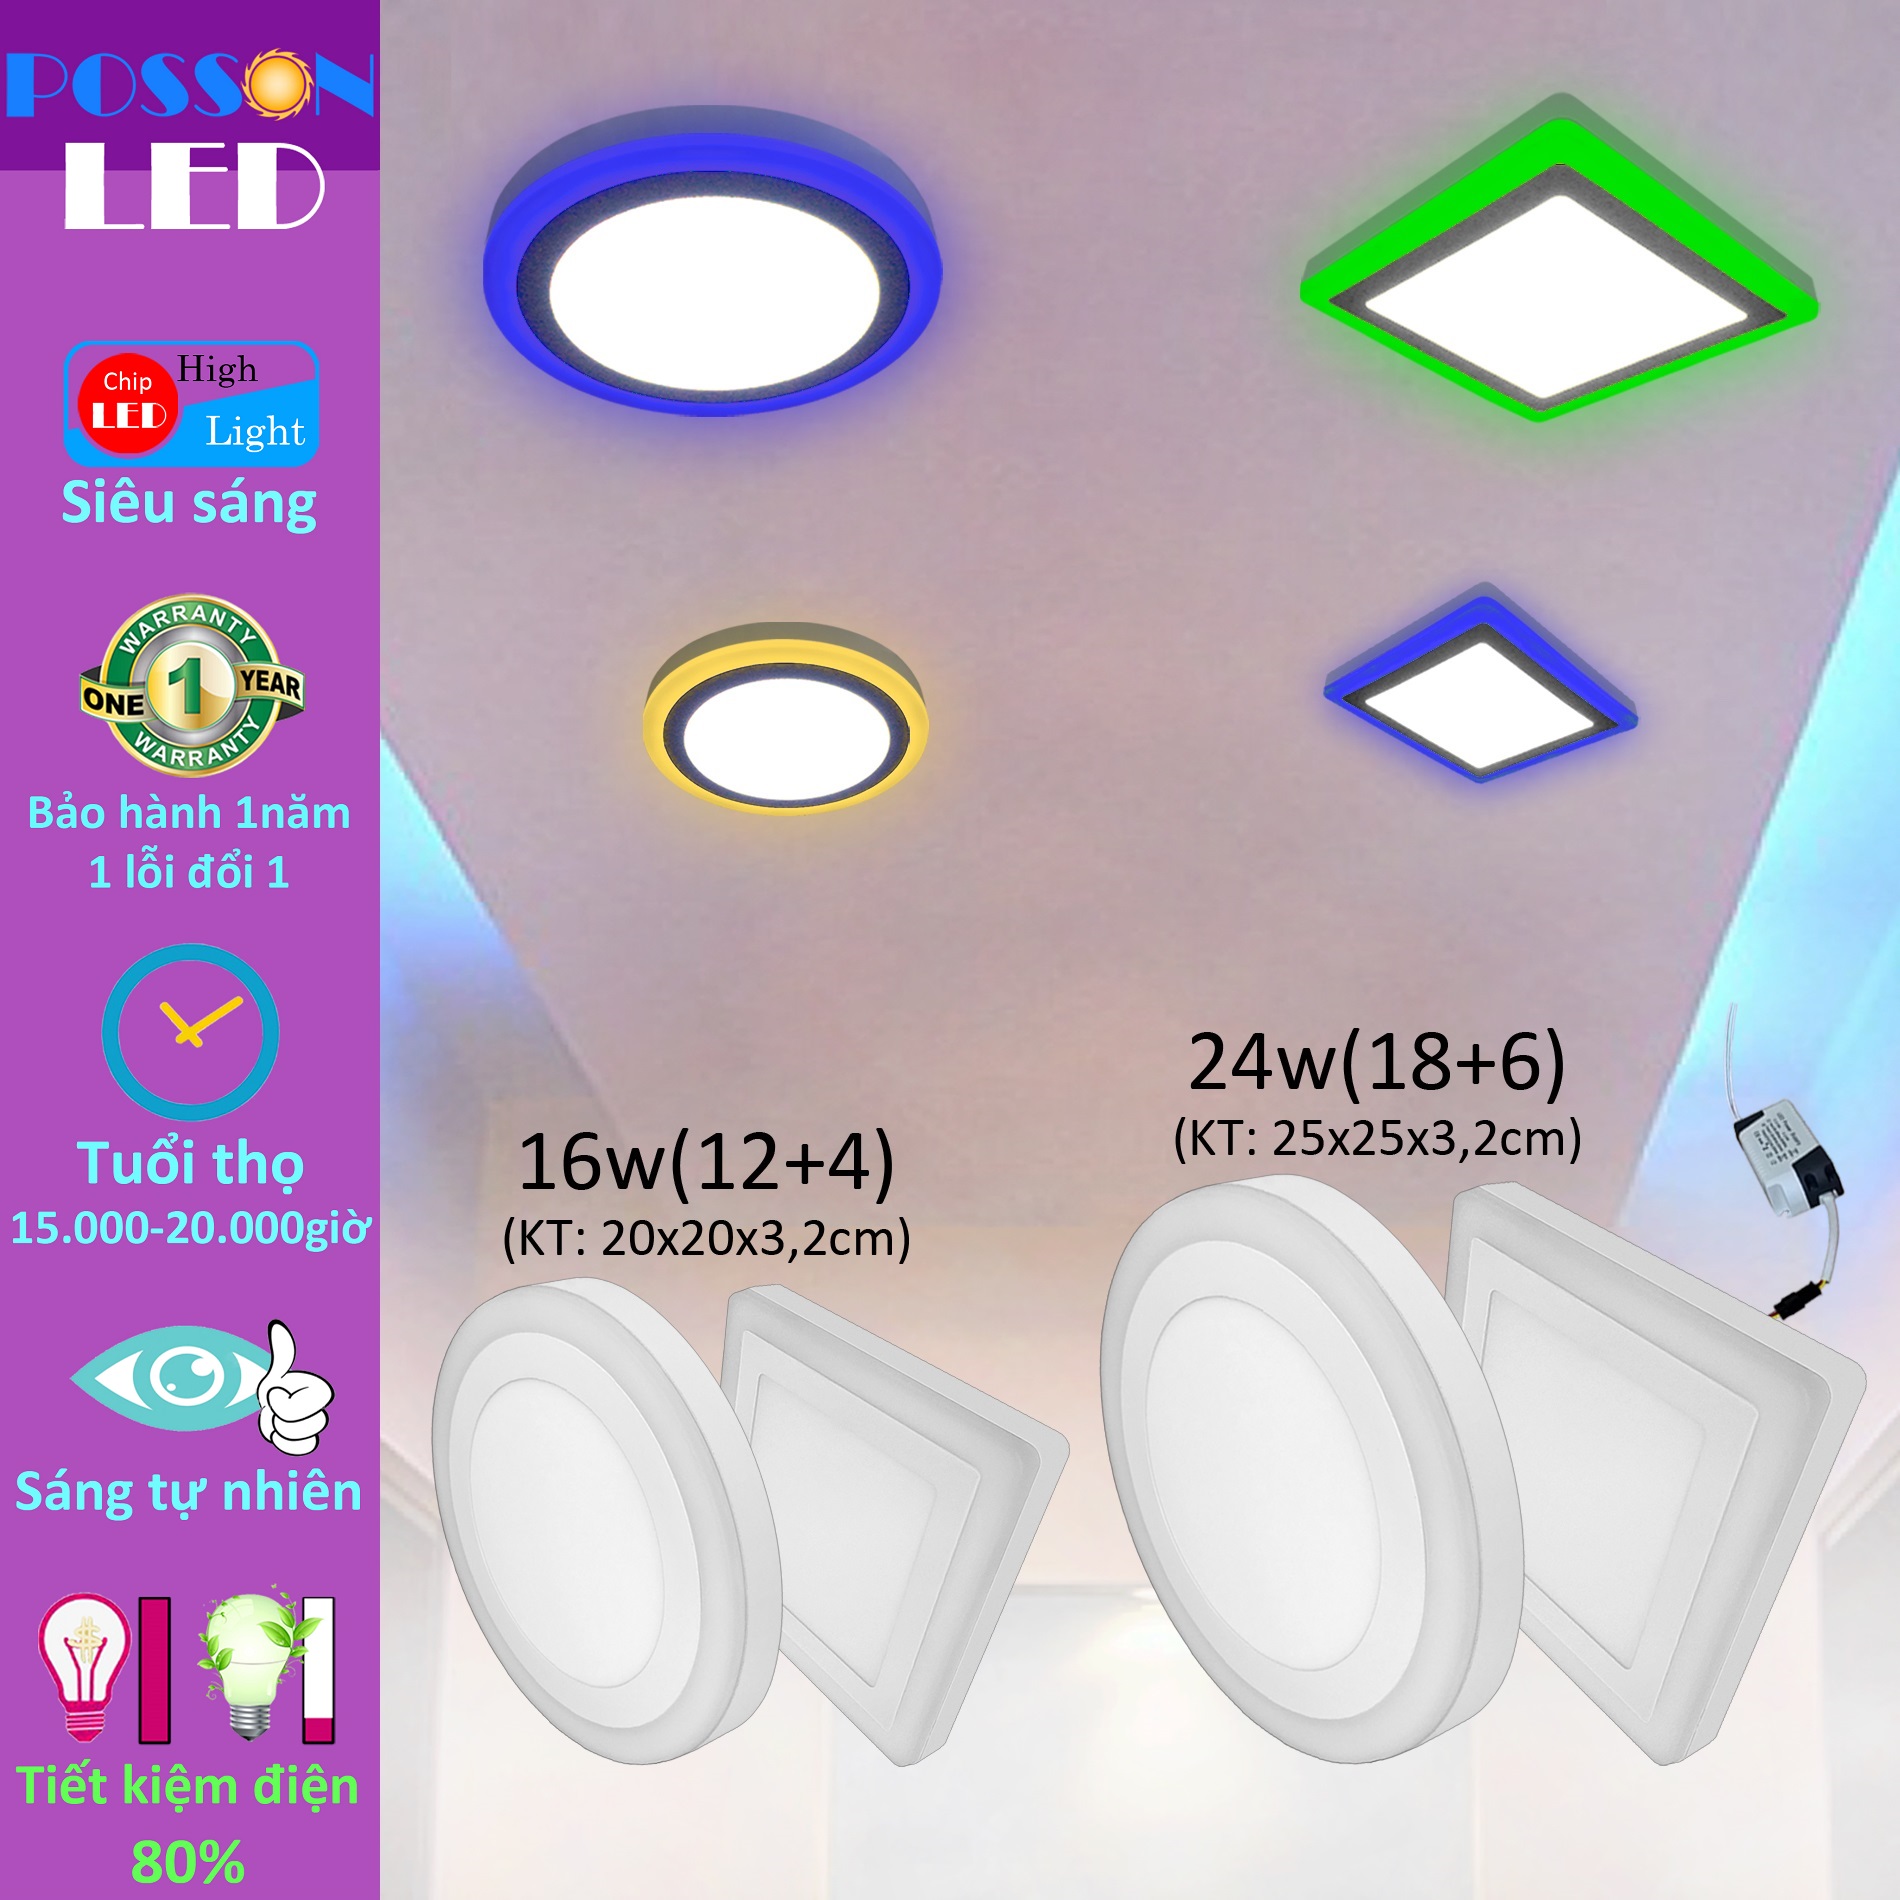 Đèn Led ốp trần 16w  ( 12w +4w) 24w ( 18w +6w) ốp nổi tròn hoặc vuông 2 màu 3 chế độ chọn viền màu Posson LP-RSox+x